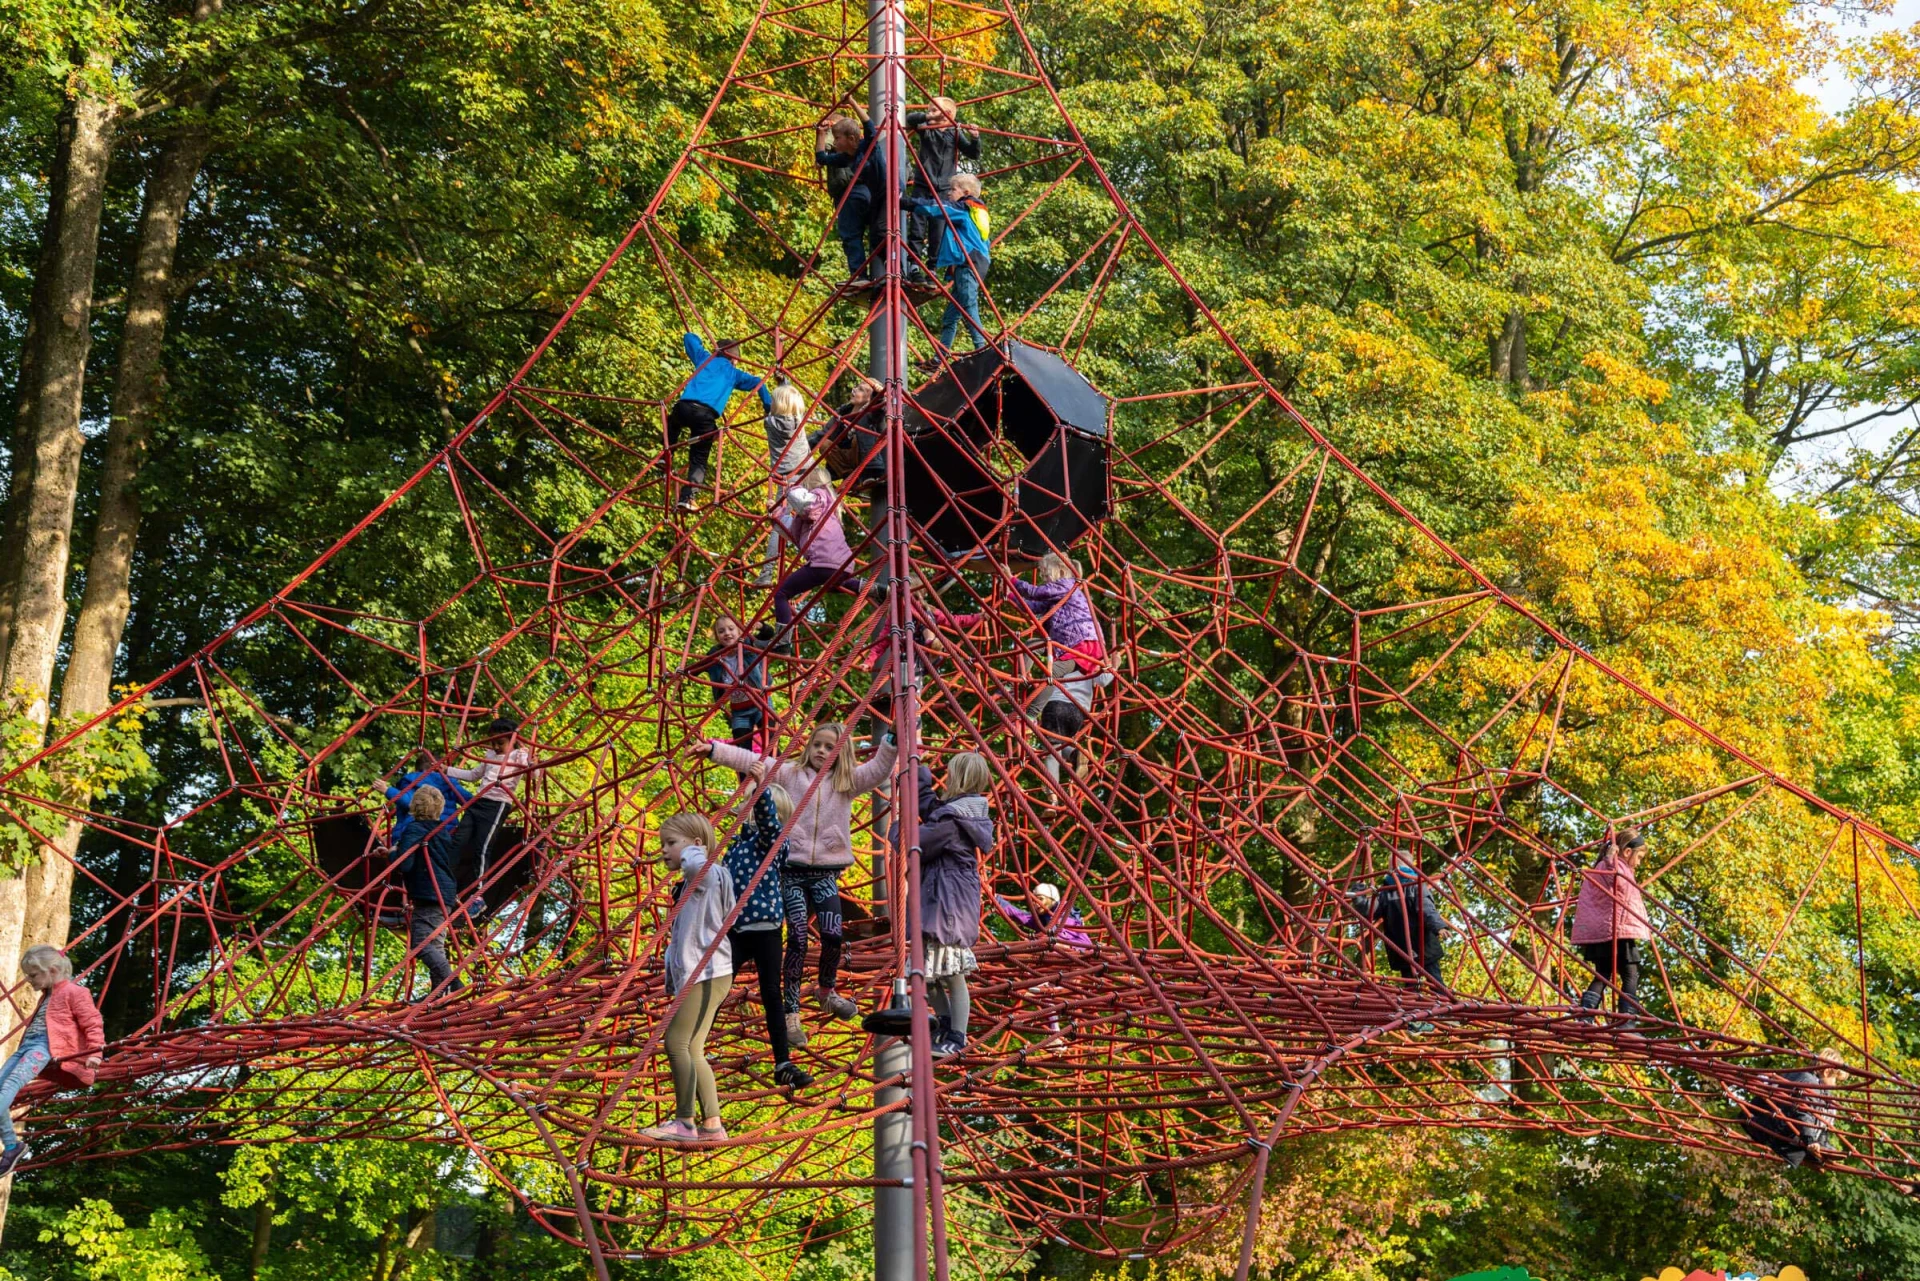 Kinder klettern auf einem grossen pyramidenförmigen Netz auf dem Spielplatz am Schloss Egeskov